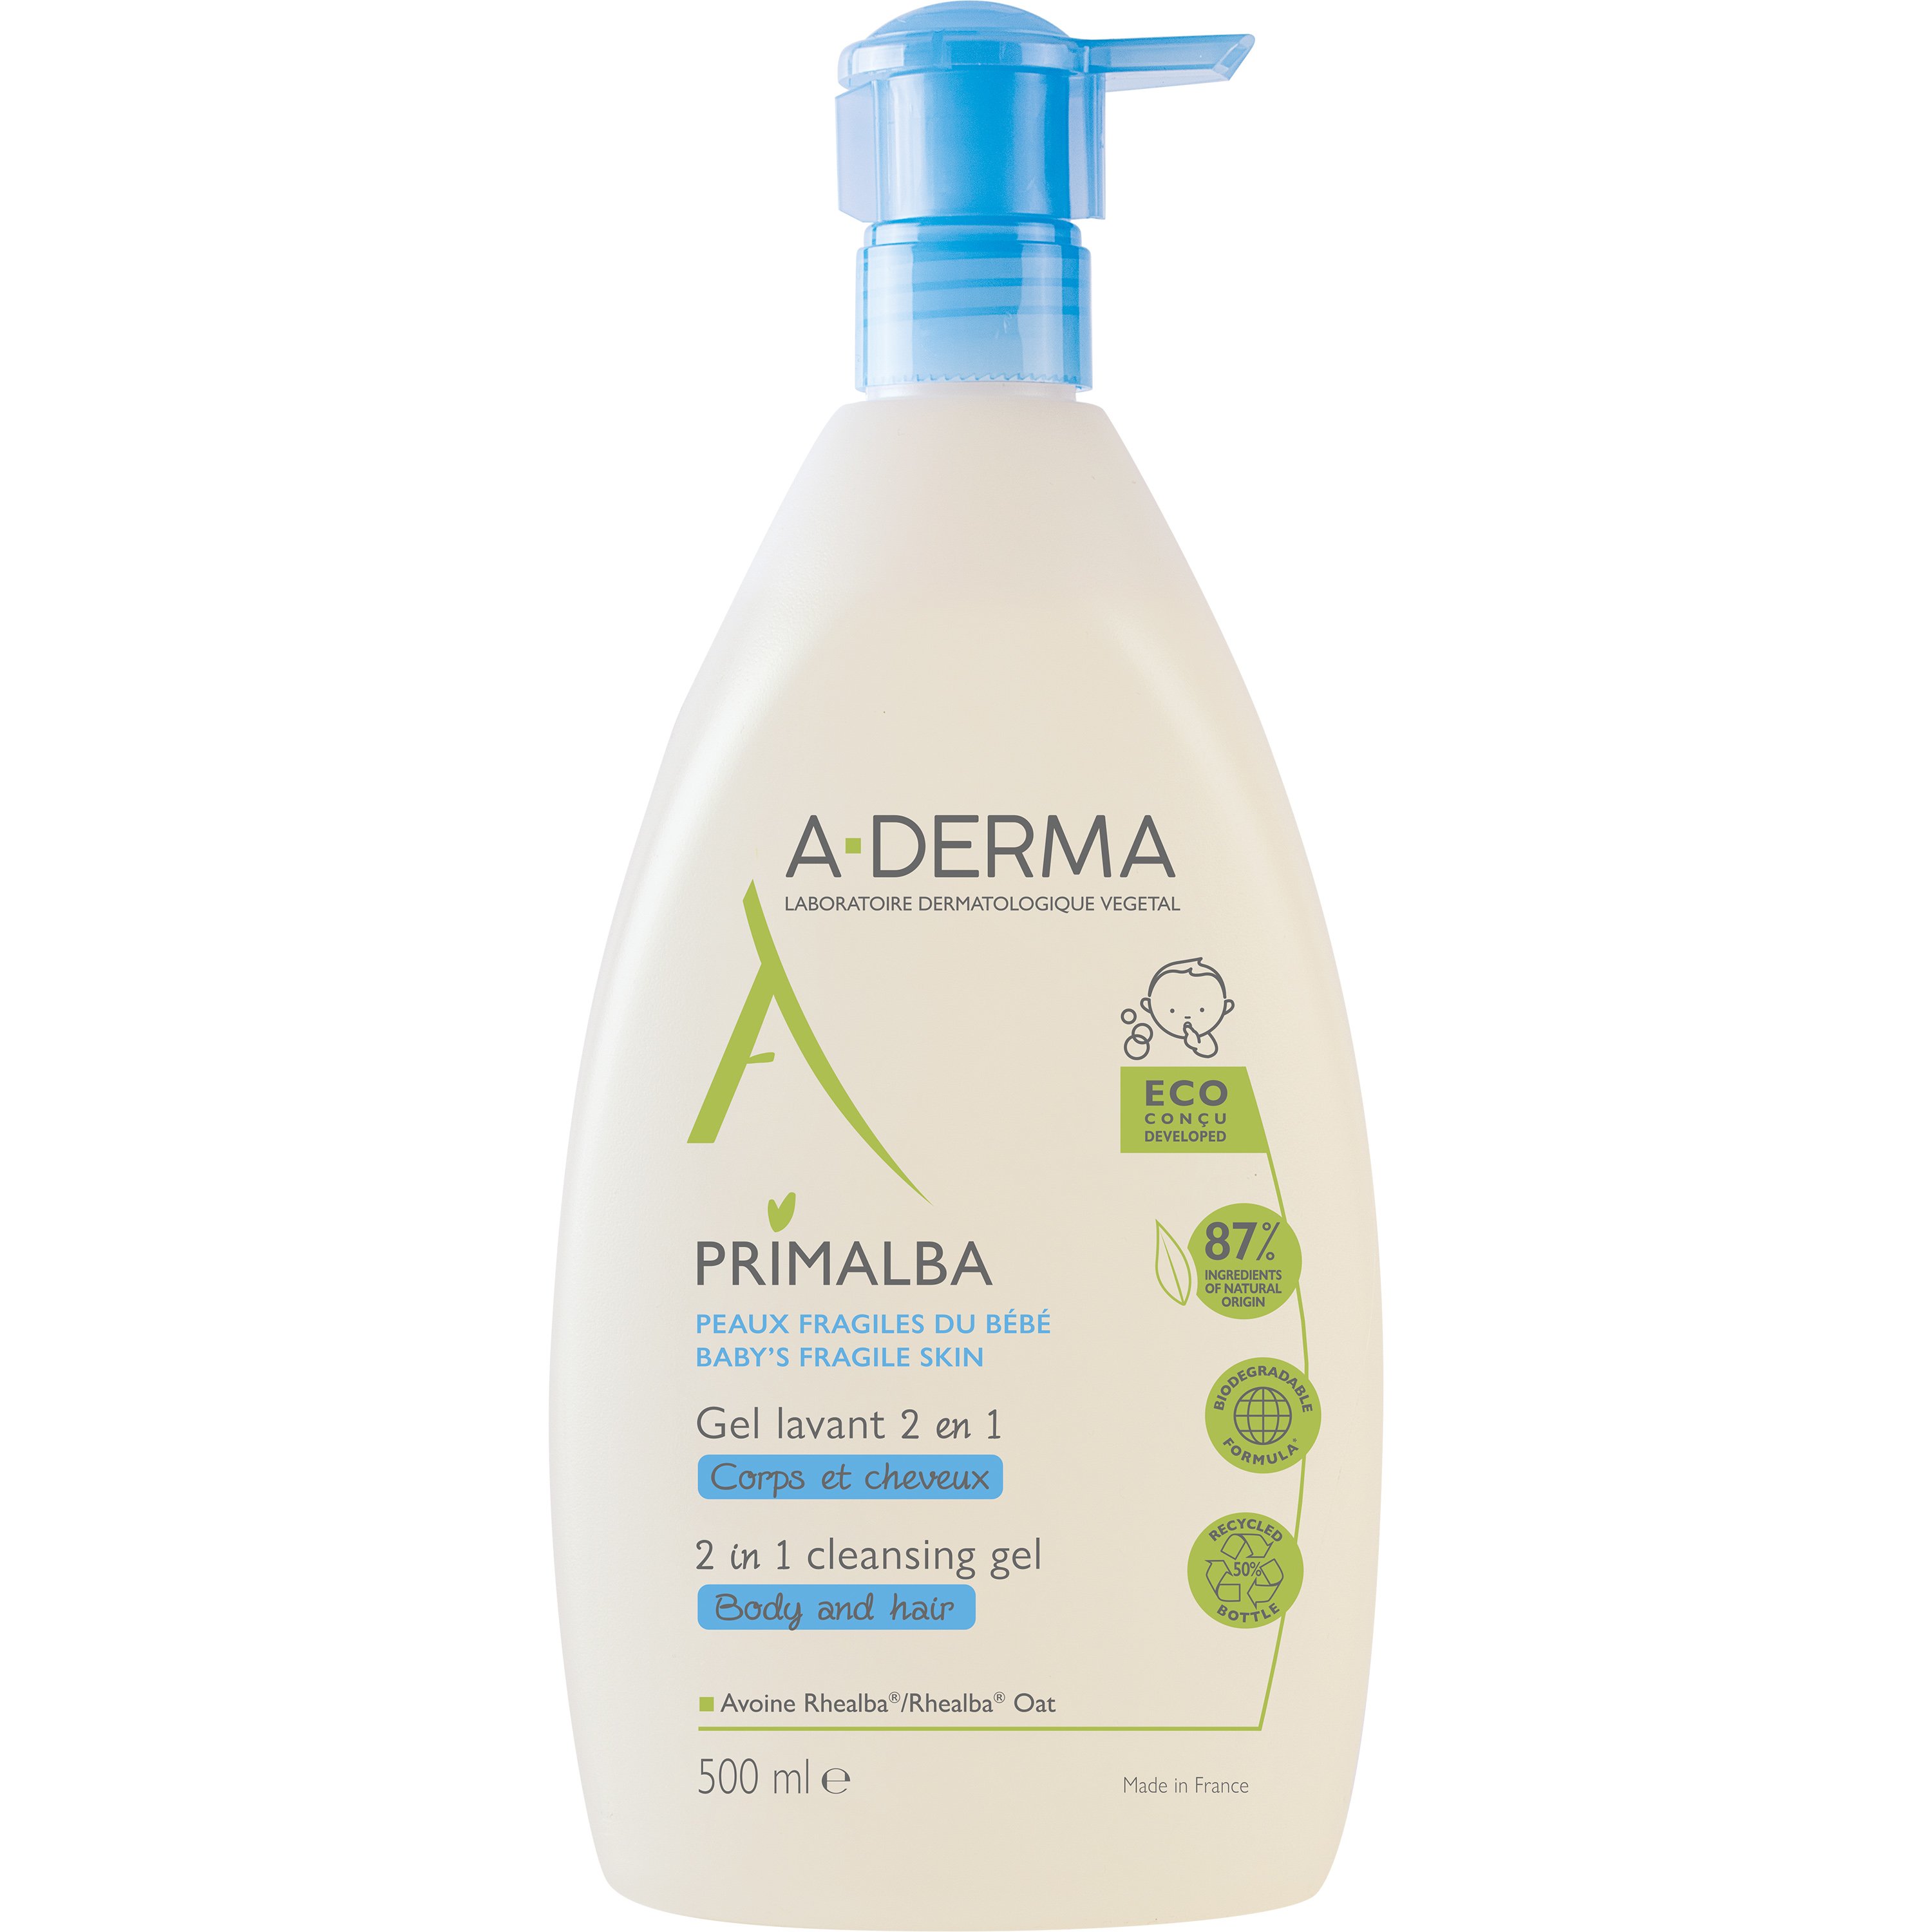 A-Derma Primalba Cleansing Gel 2 in 1 Body & Hair...